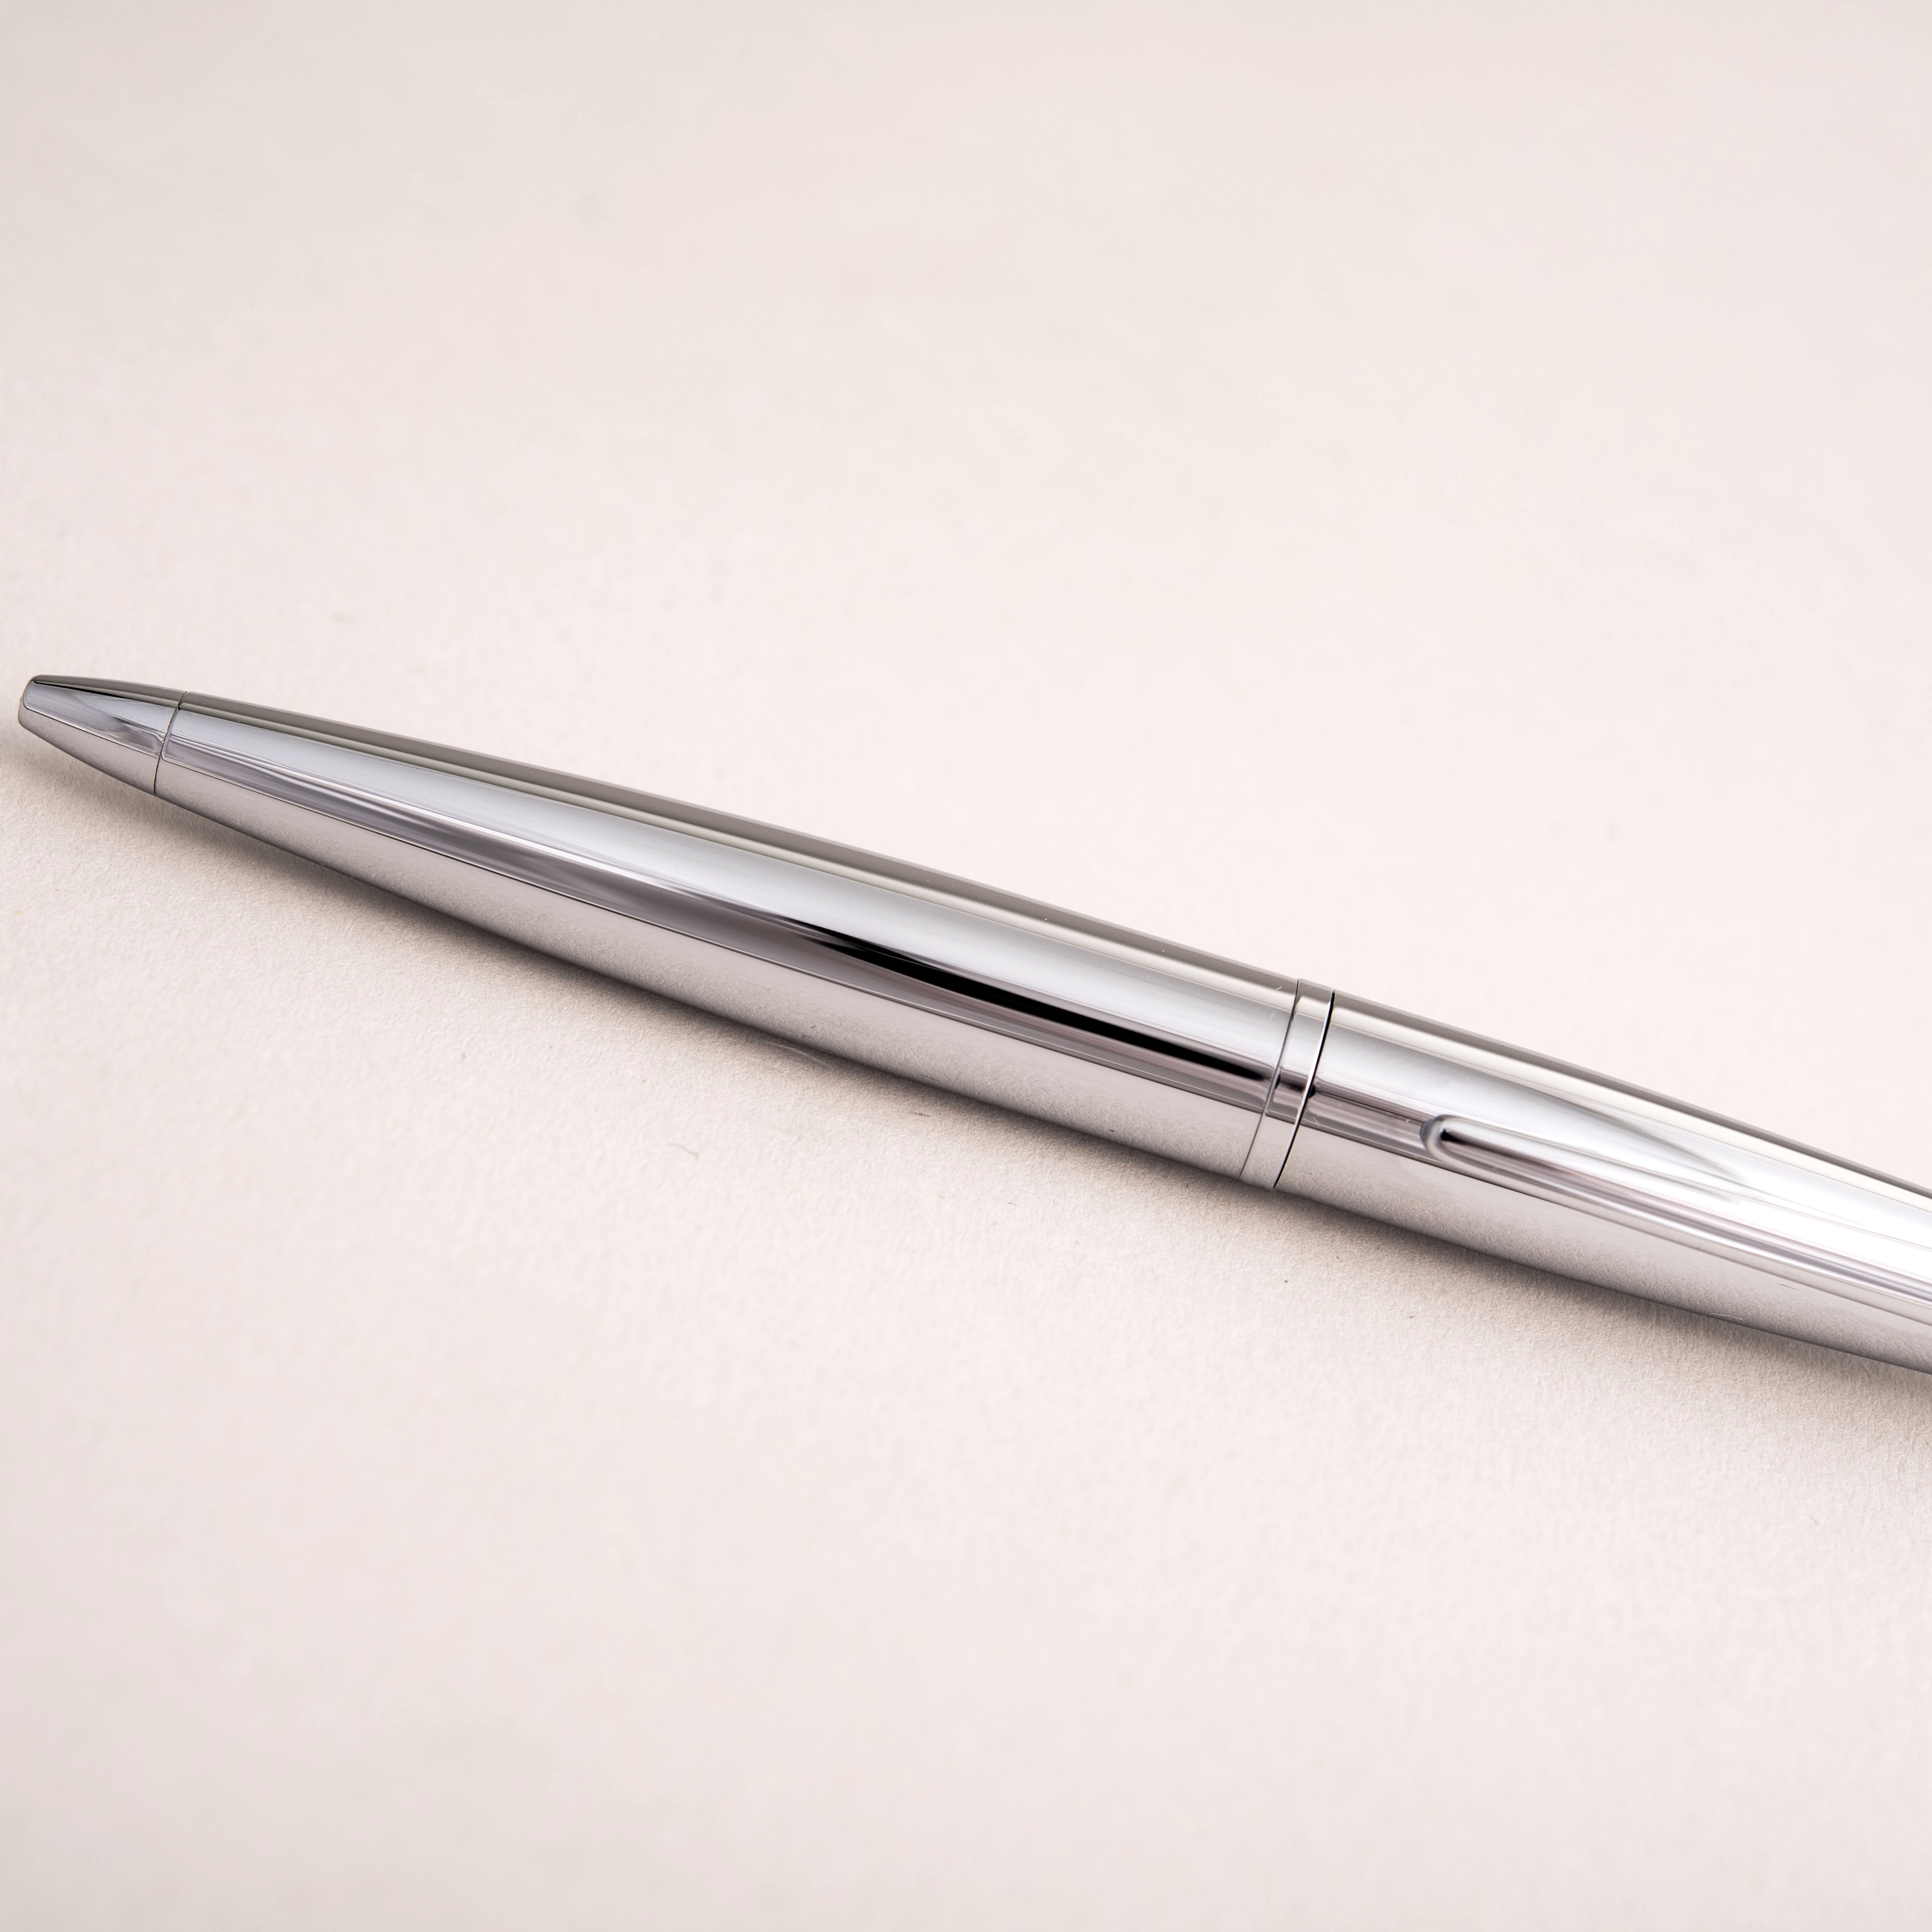 Engraved Cross Ballpoint Pen - Any Name